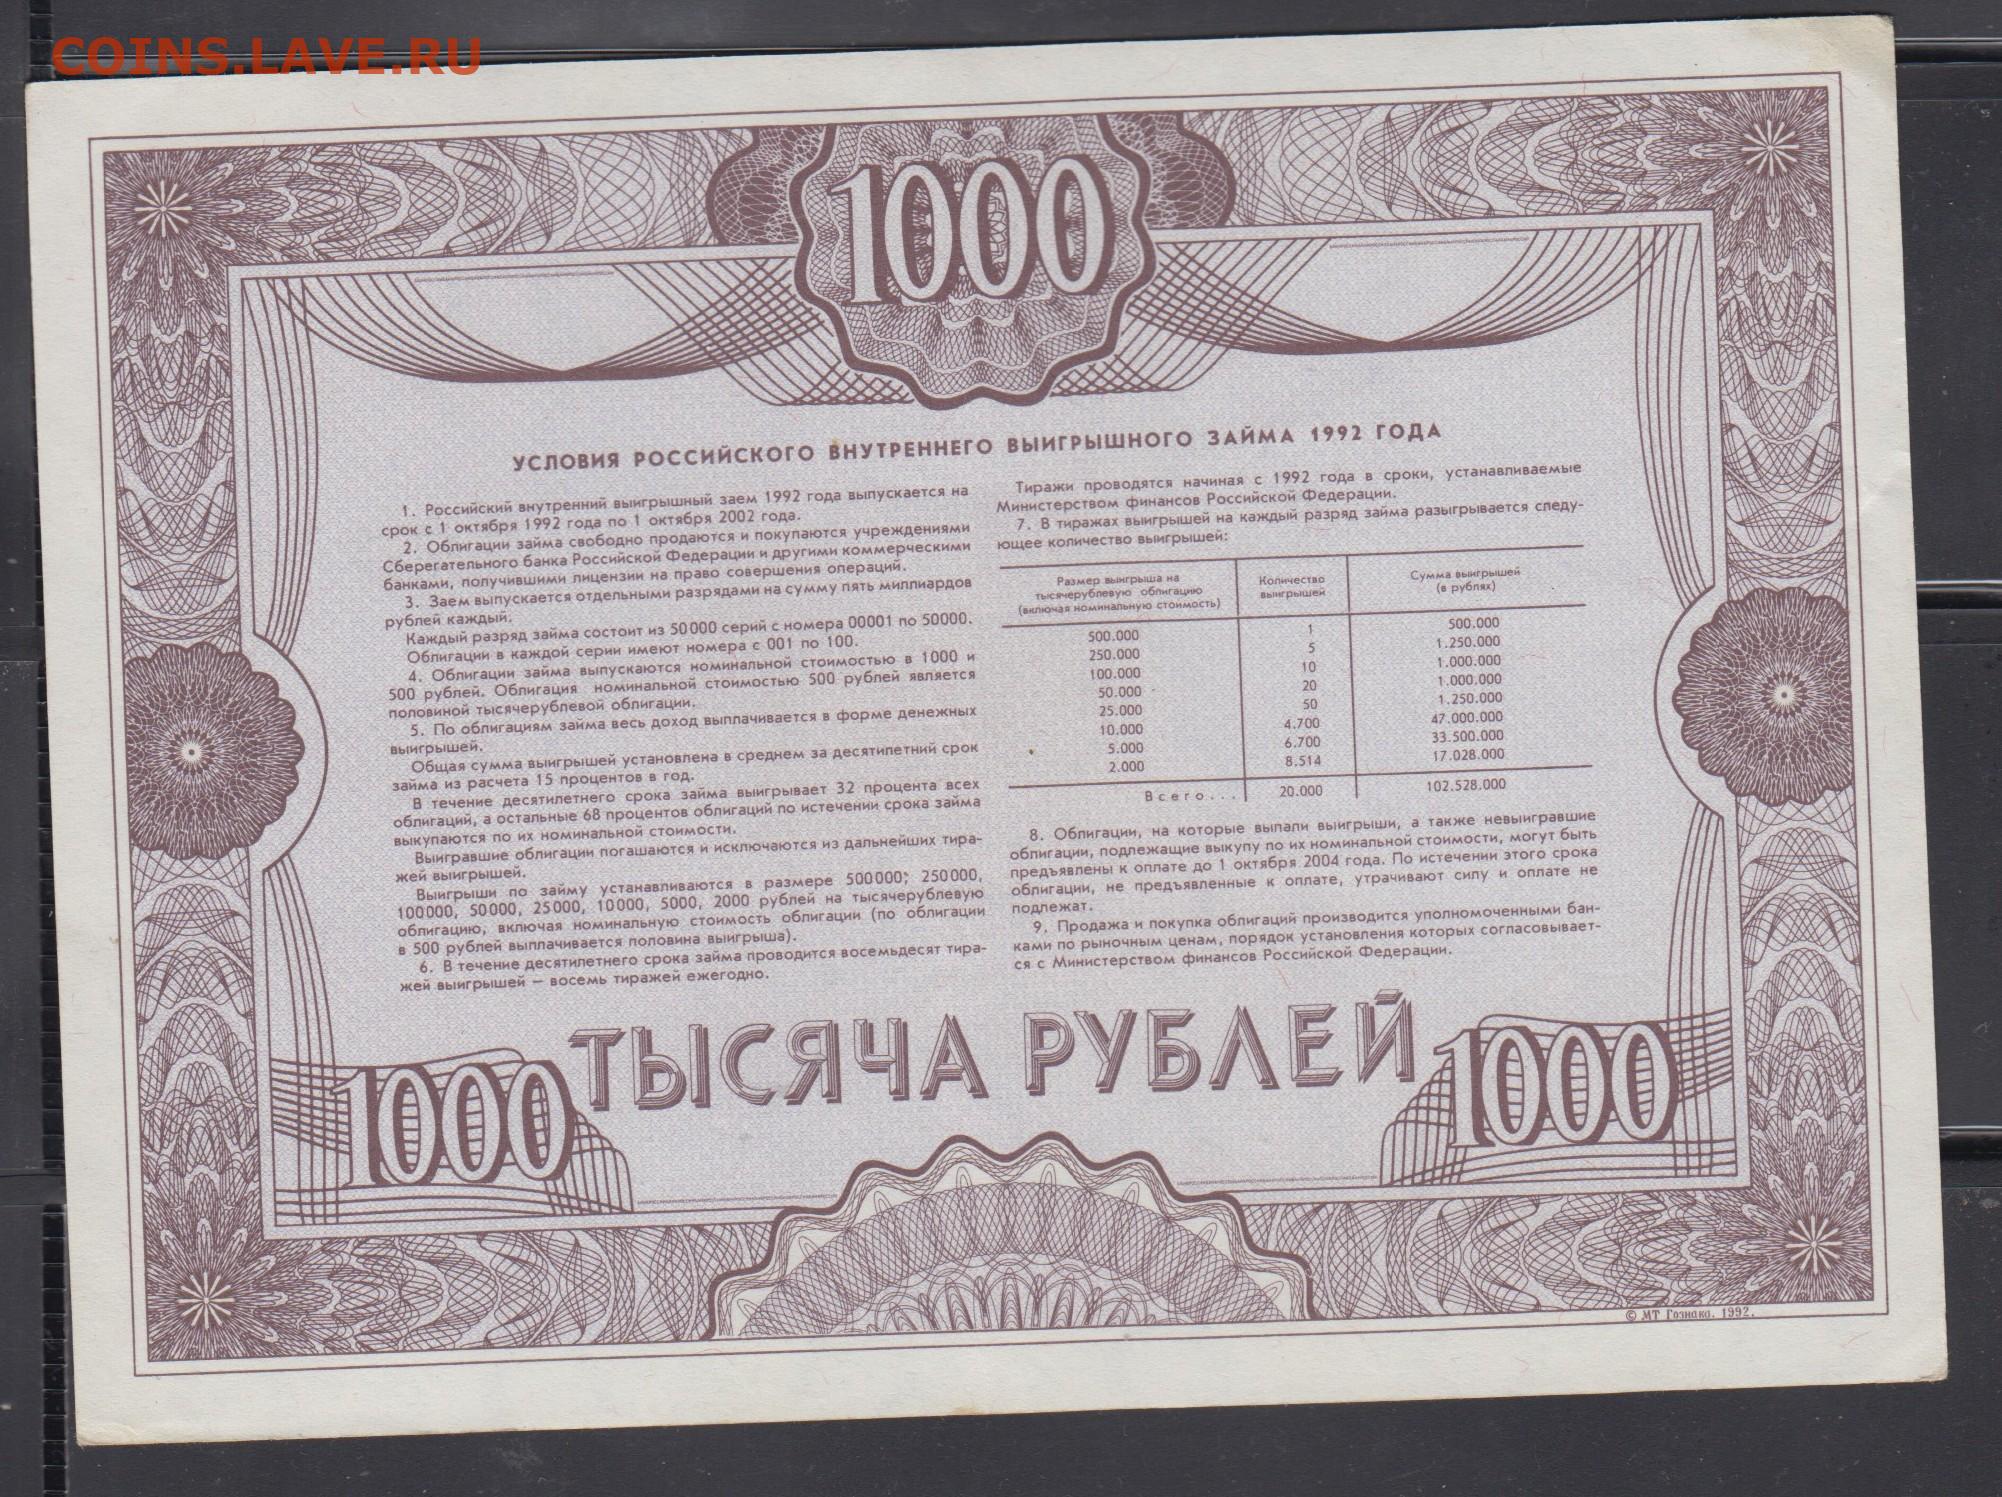 Российский внутренний займ 1992 года облигация